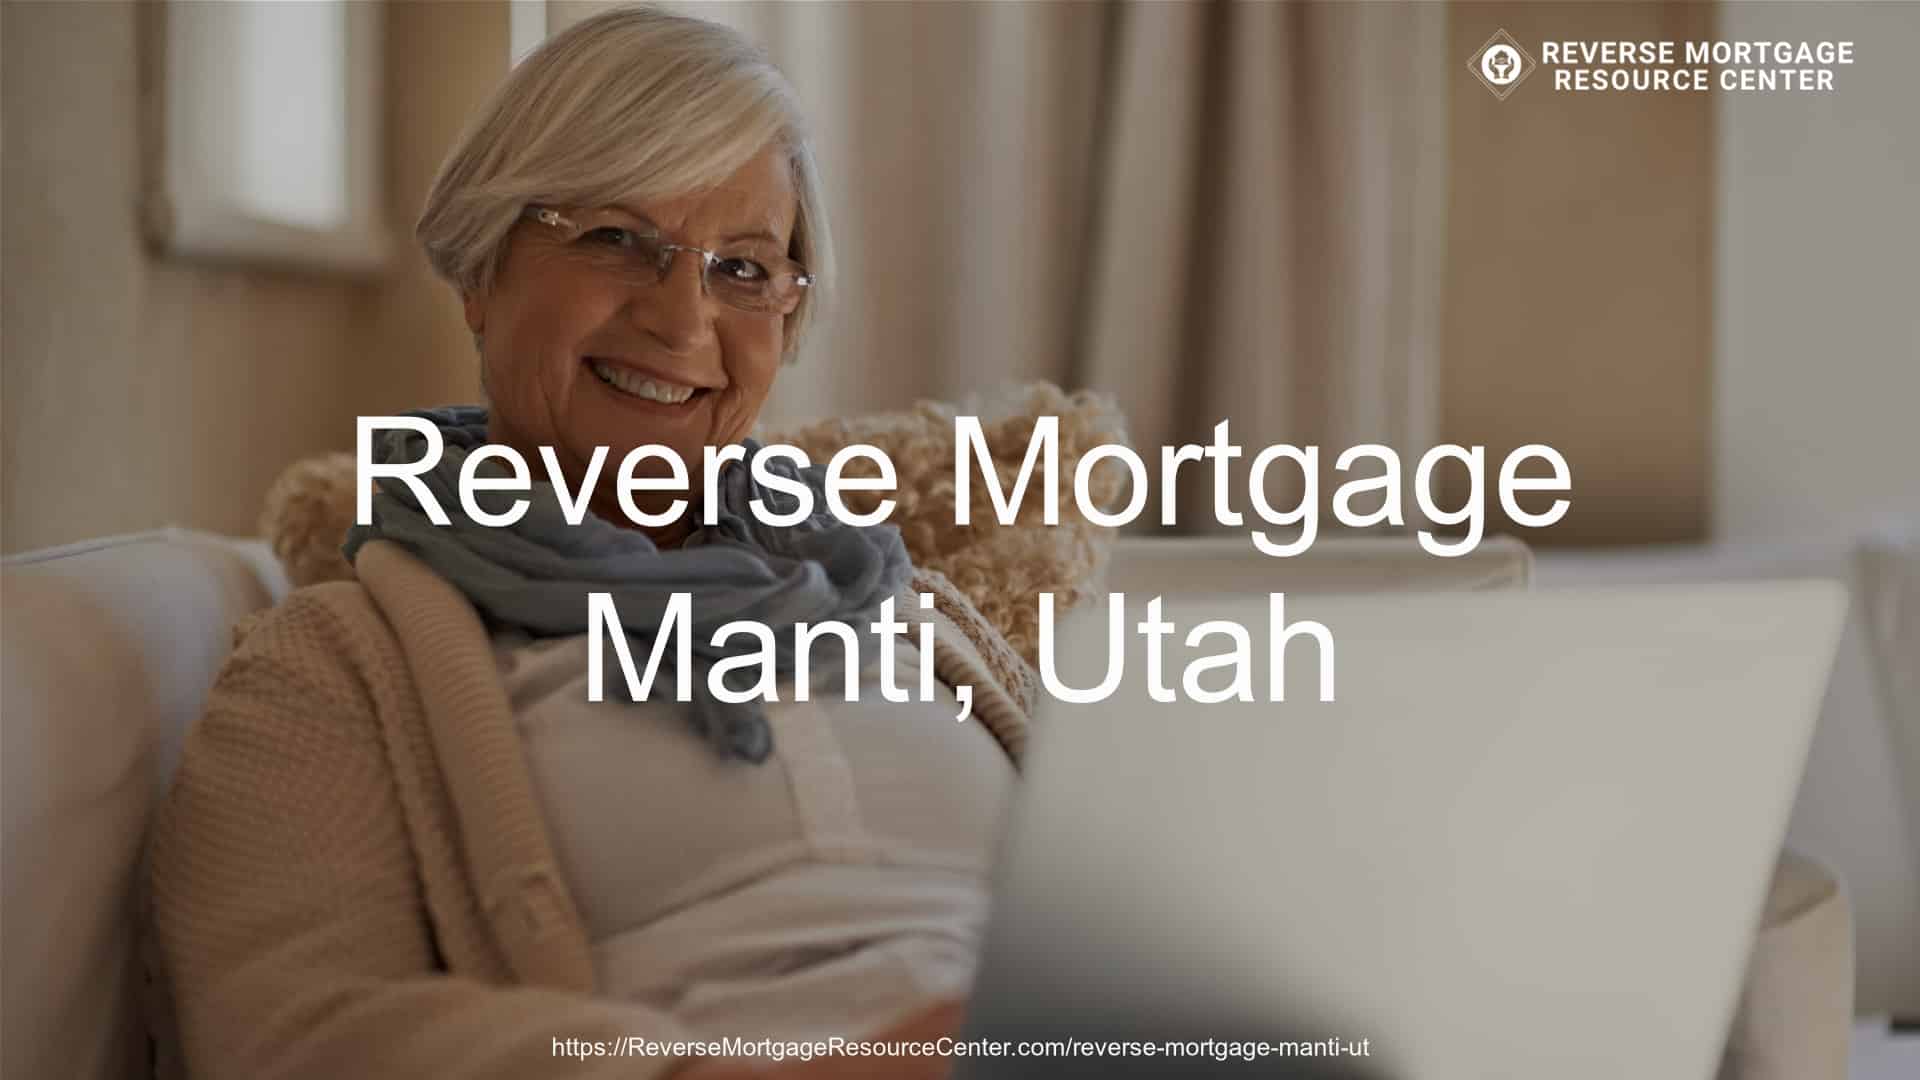 Reverse Mortgage Loans in Manti Utah